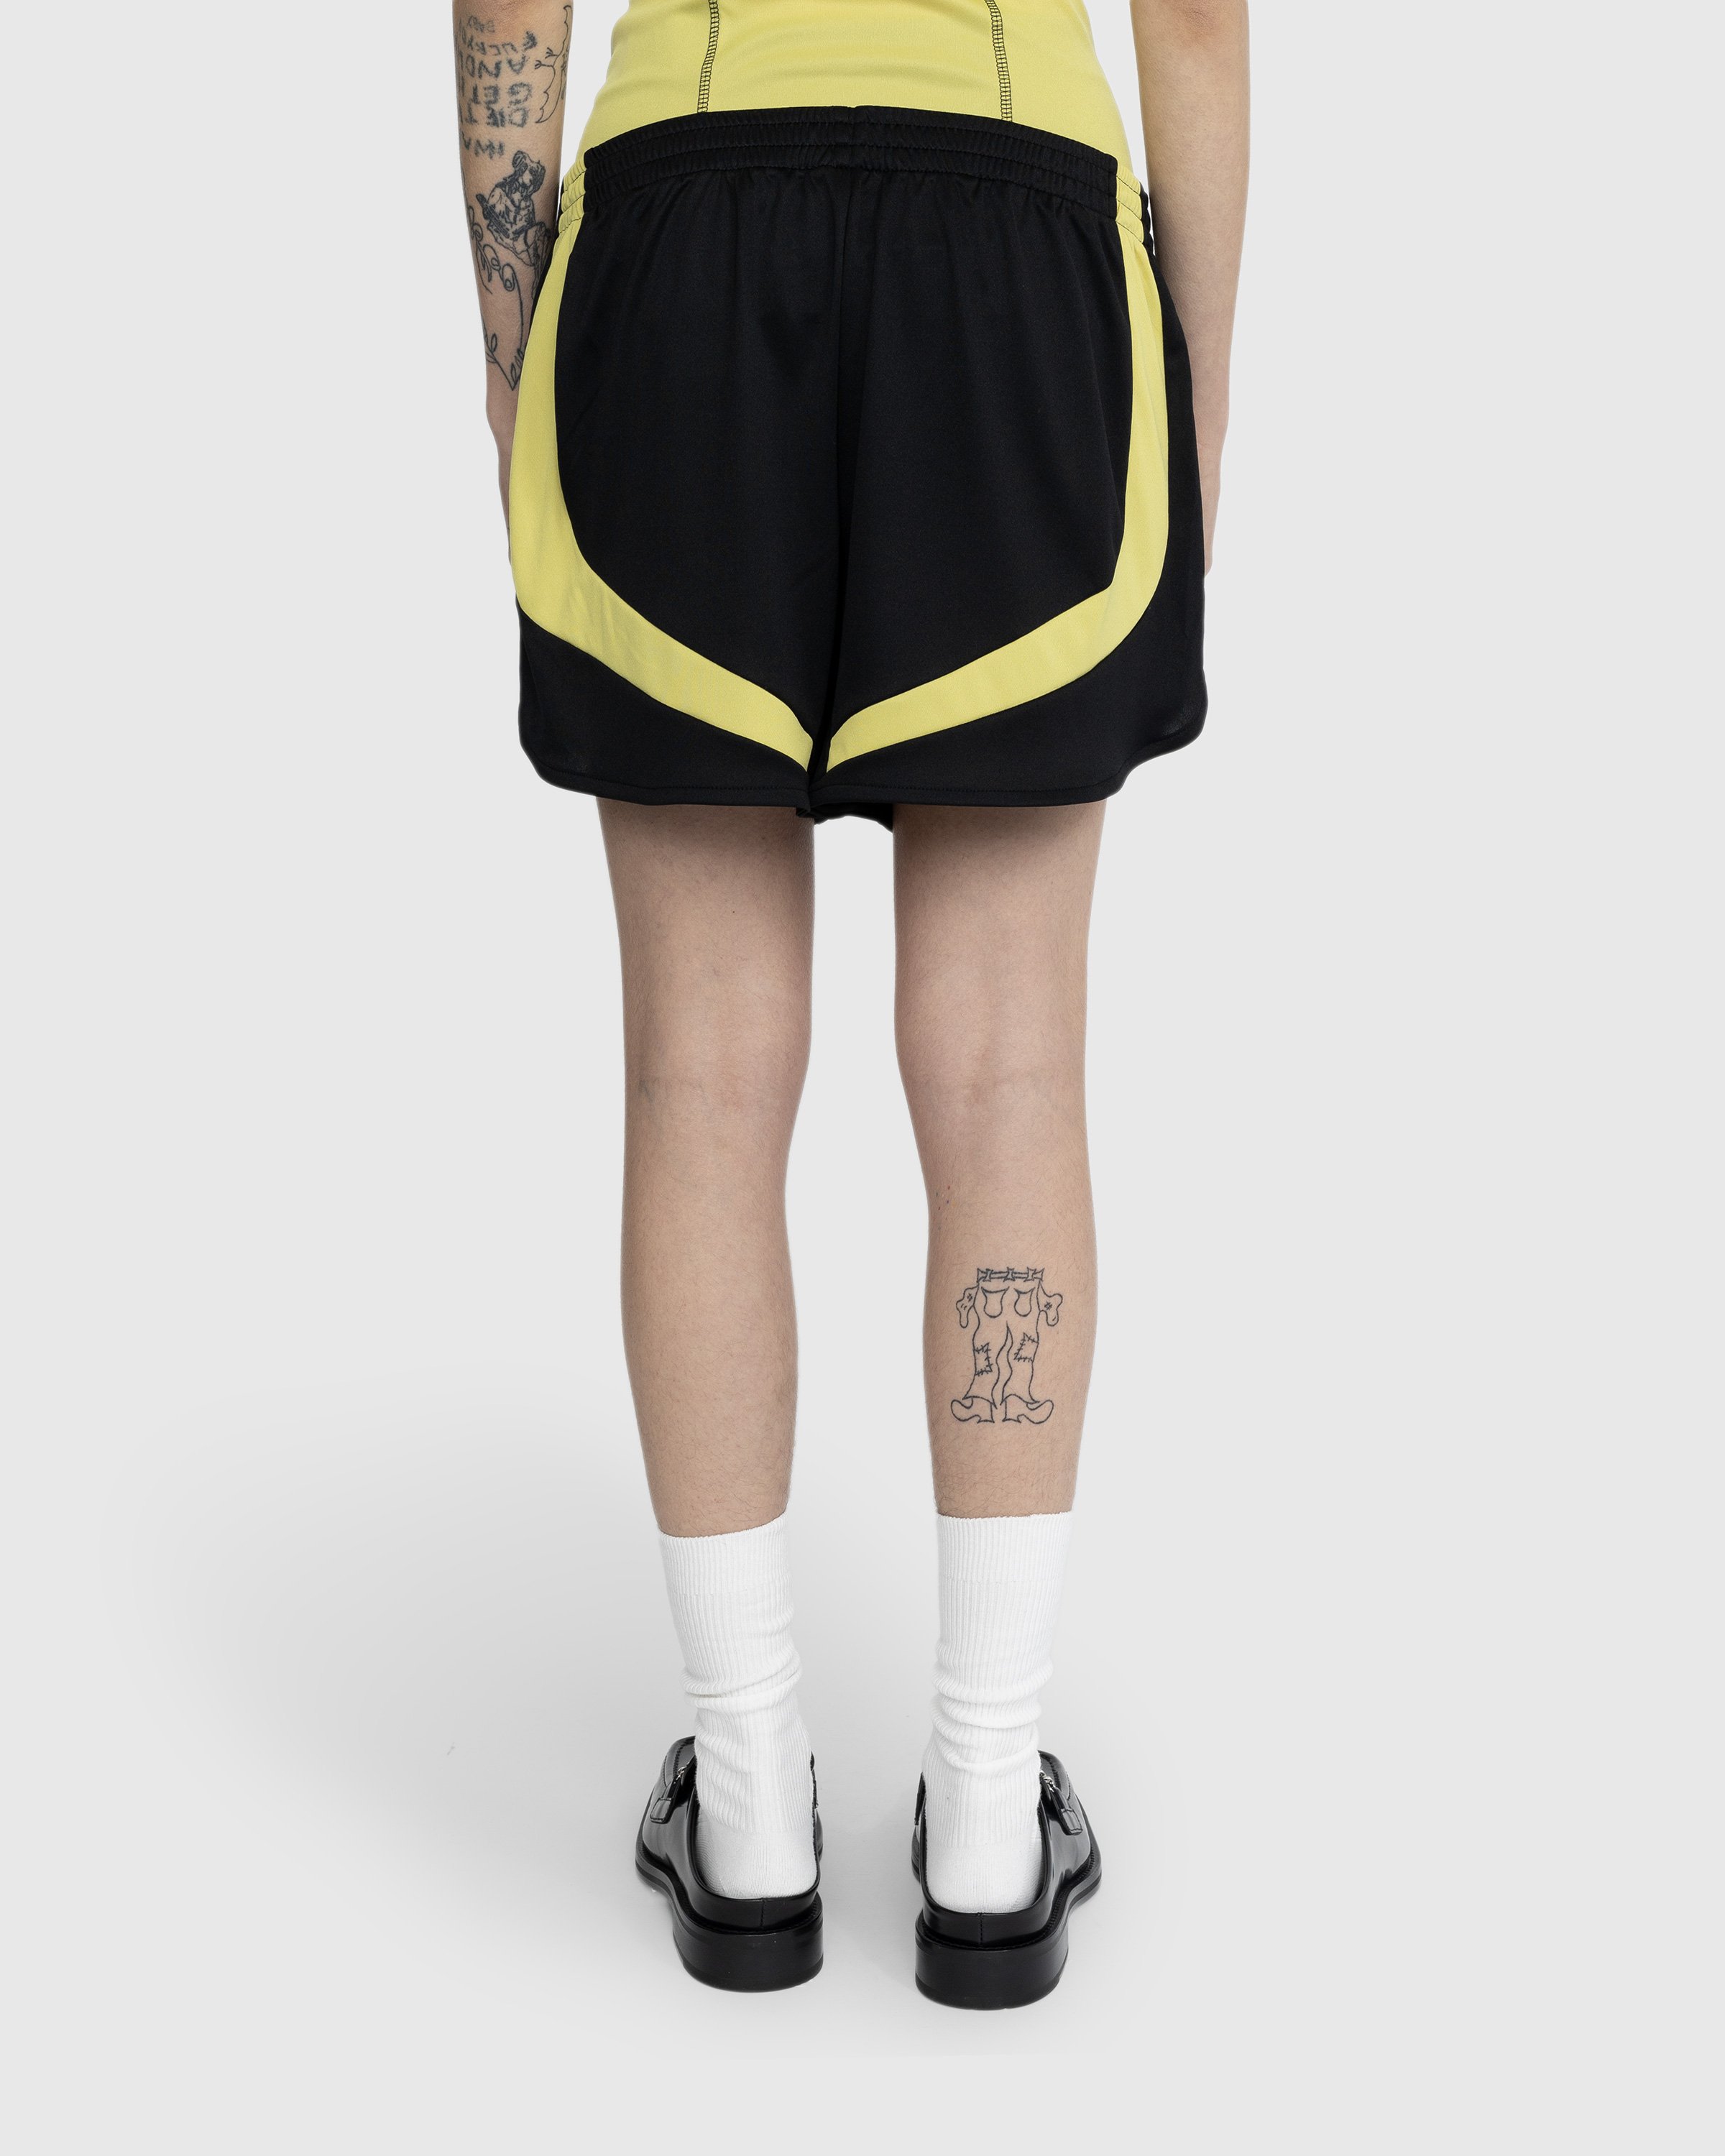 Martine Rose - Football Shorts Black - Clothing - Black - Image 3